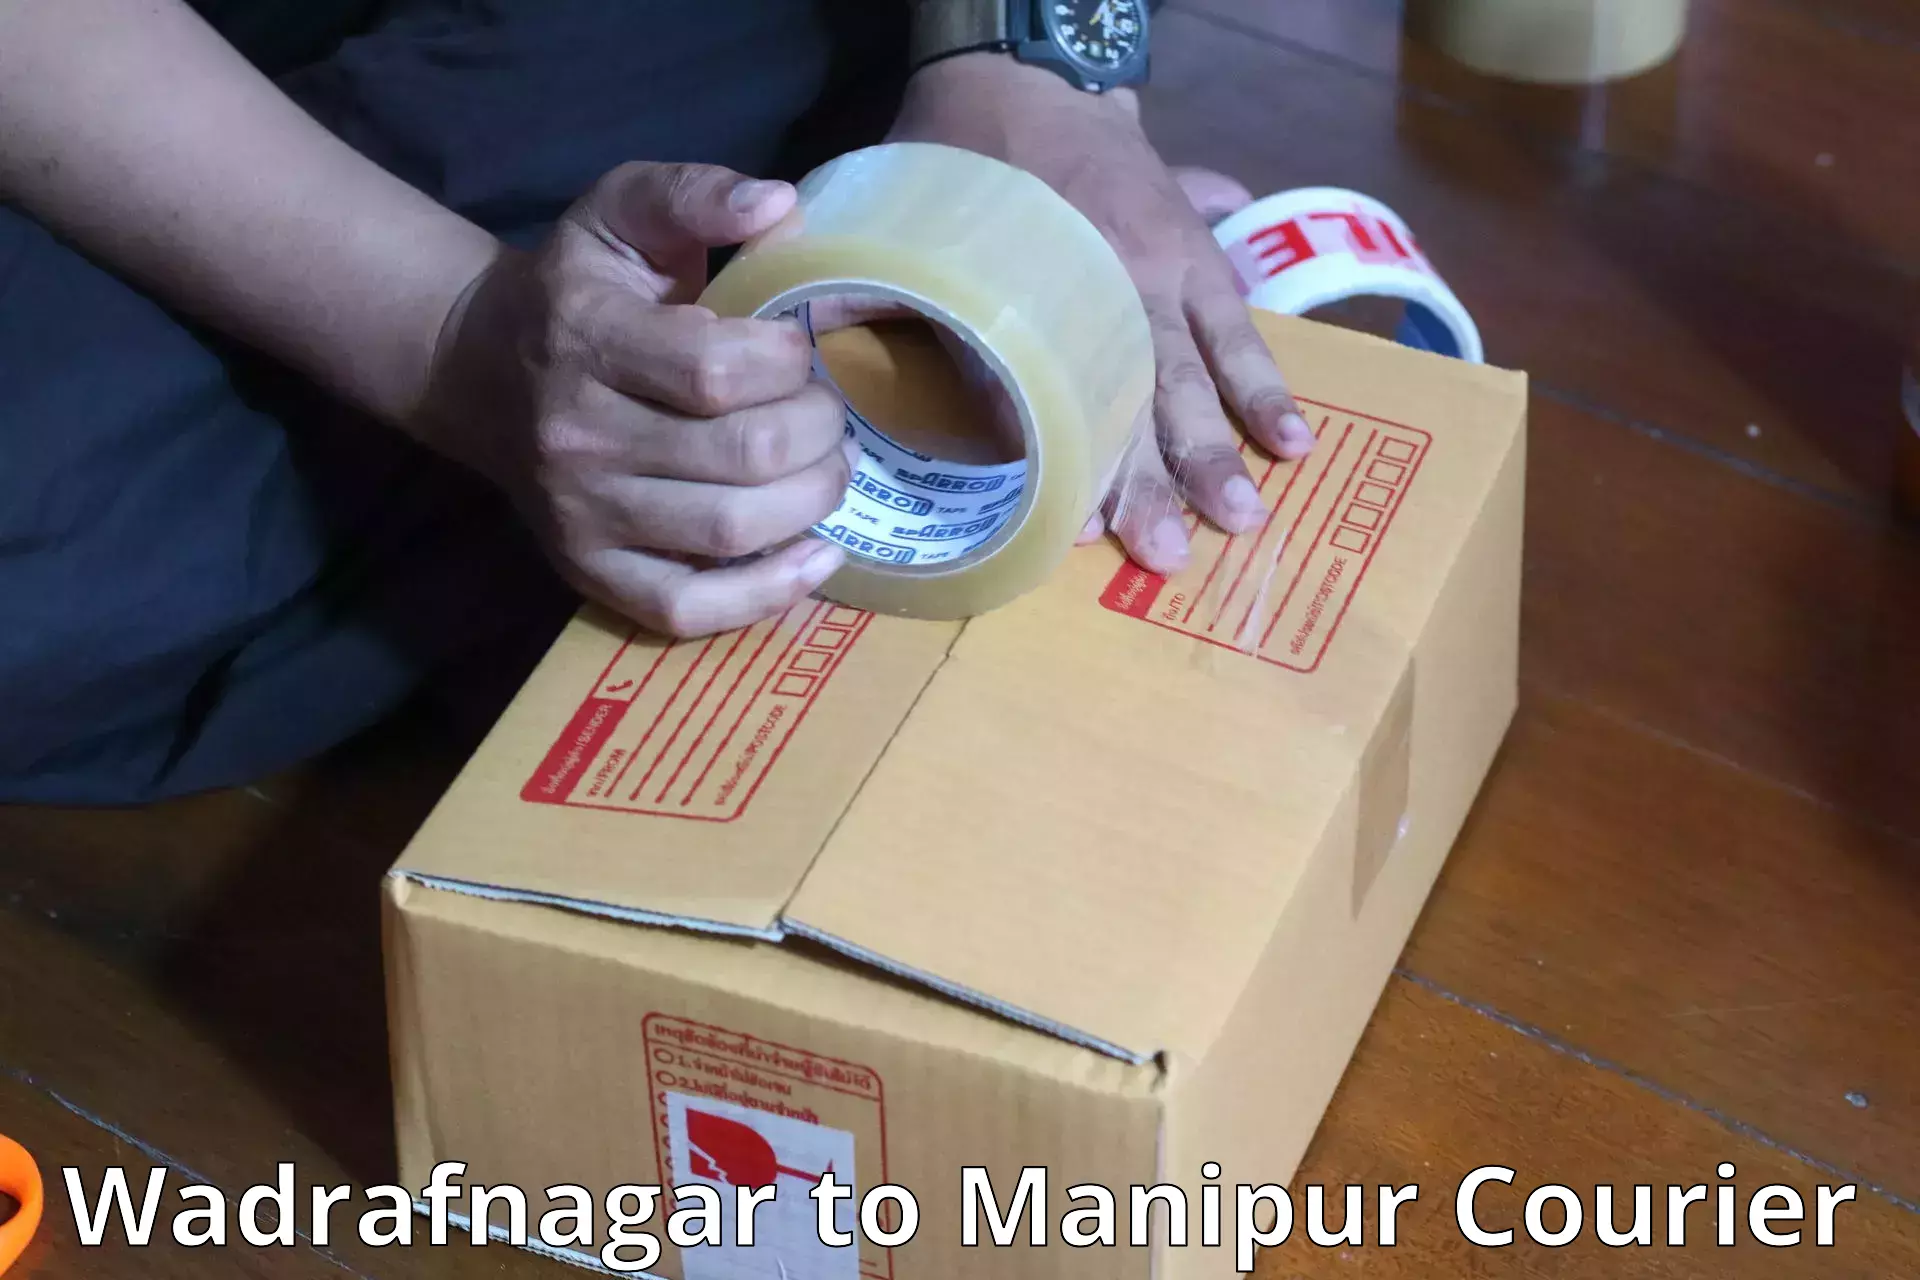 Luggage shipment tracking Wadrafnagar to NIT Manipur